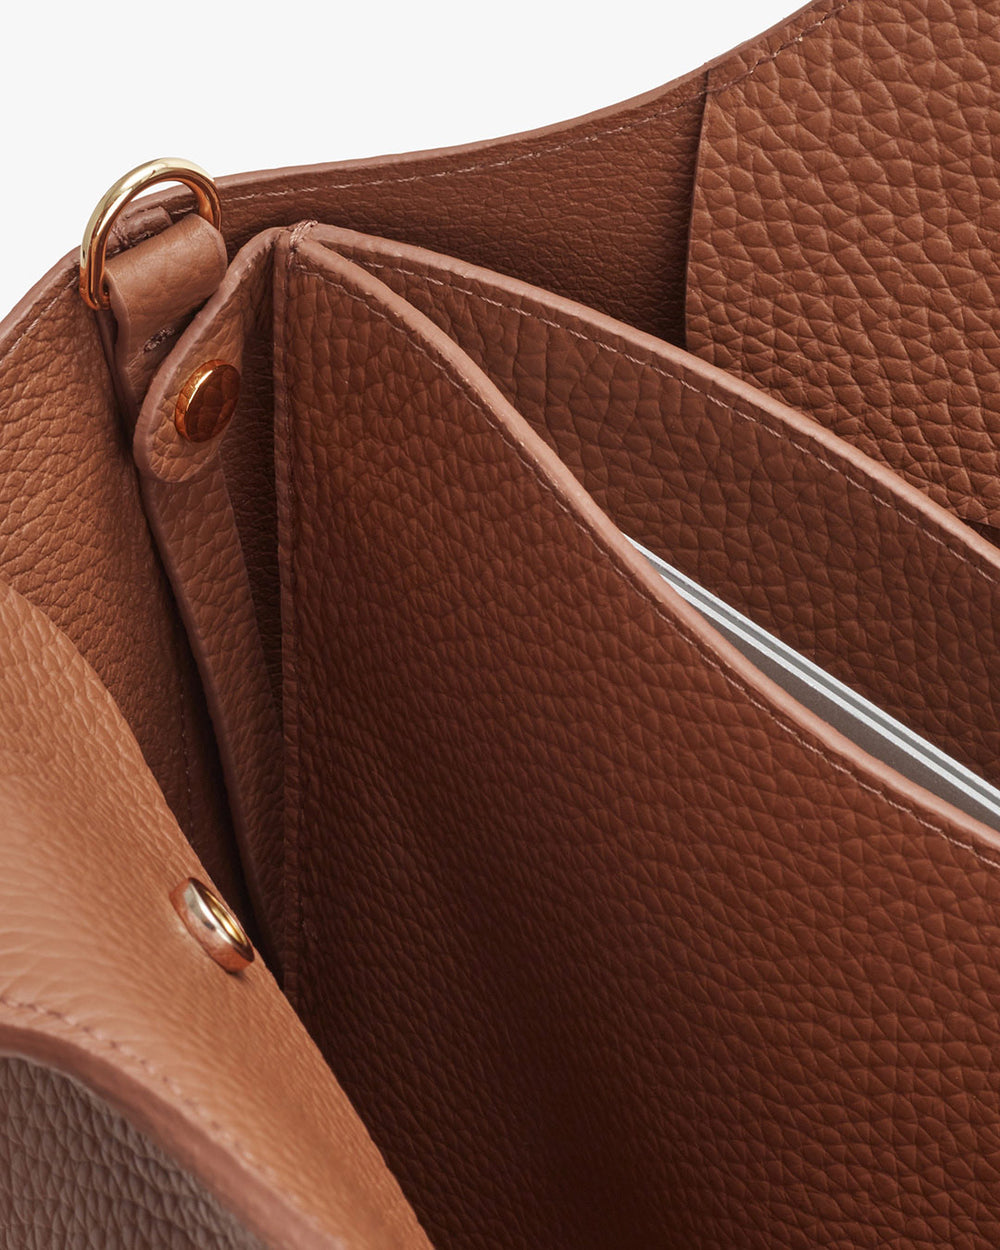 Open handbag showing interior compartments and zipper.